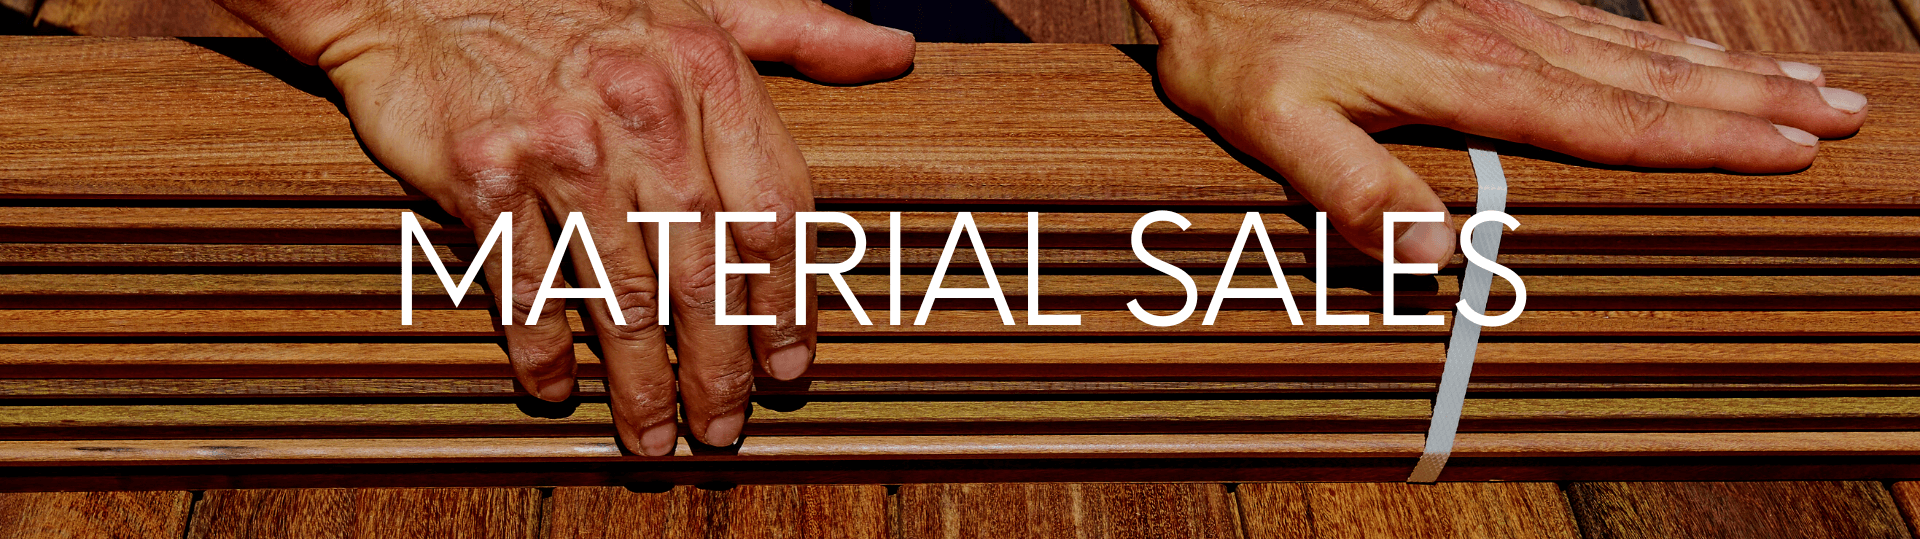 Hardwood Flooring Product Sales